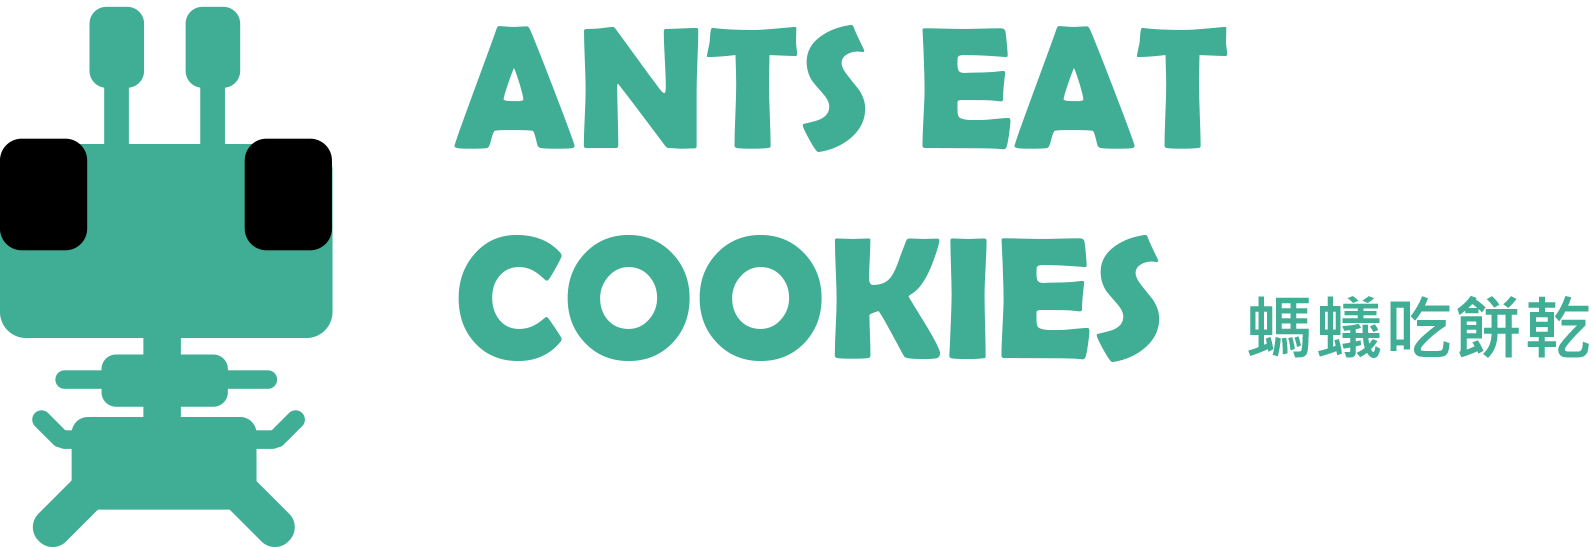 [台北場A組]ANTS EAT COOKIES